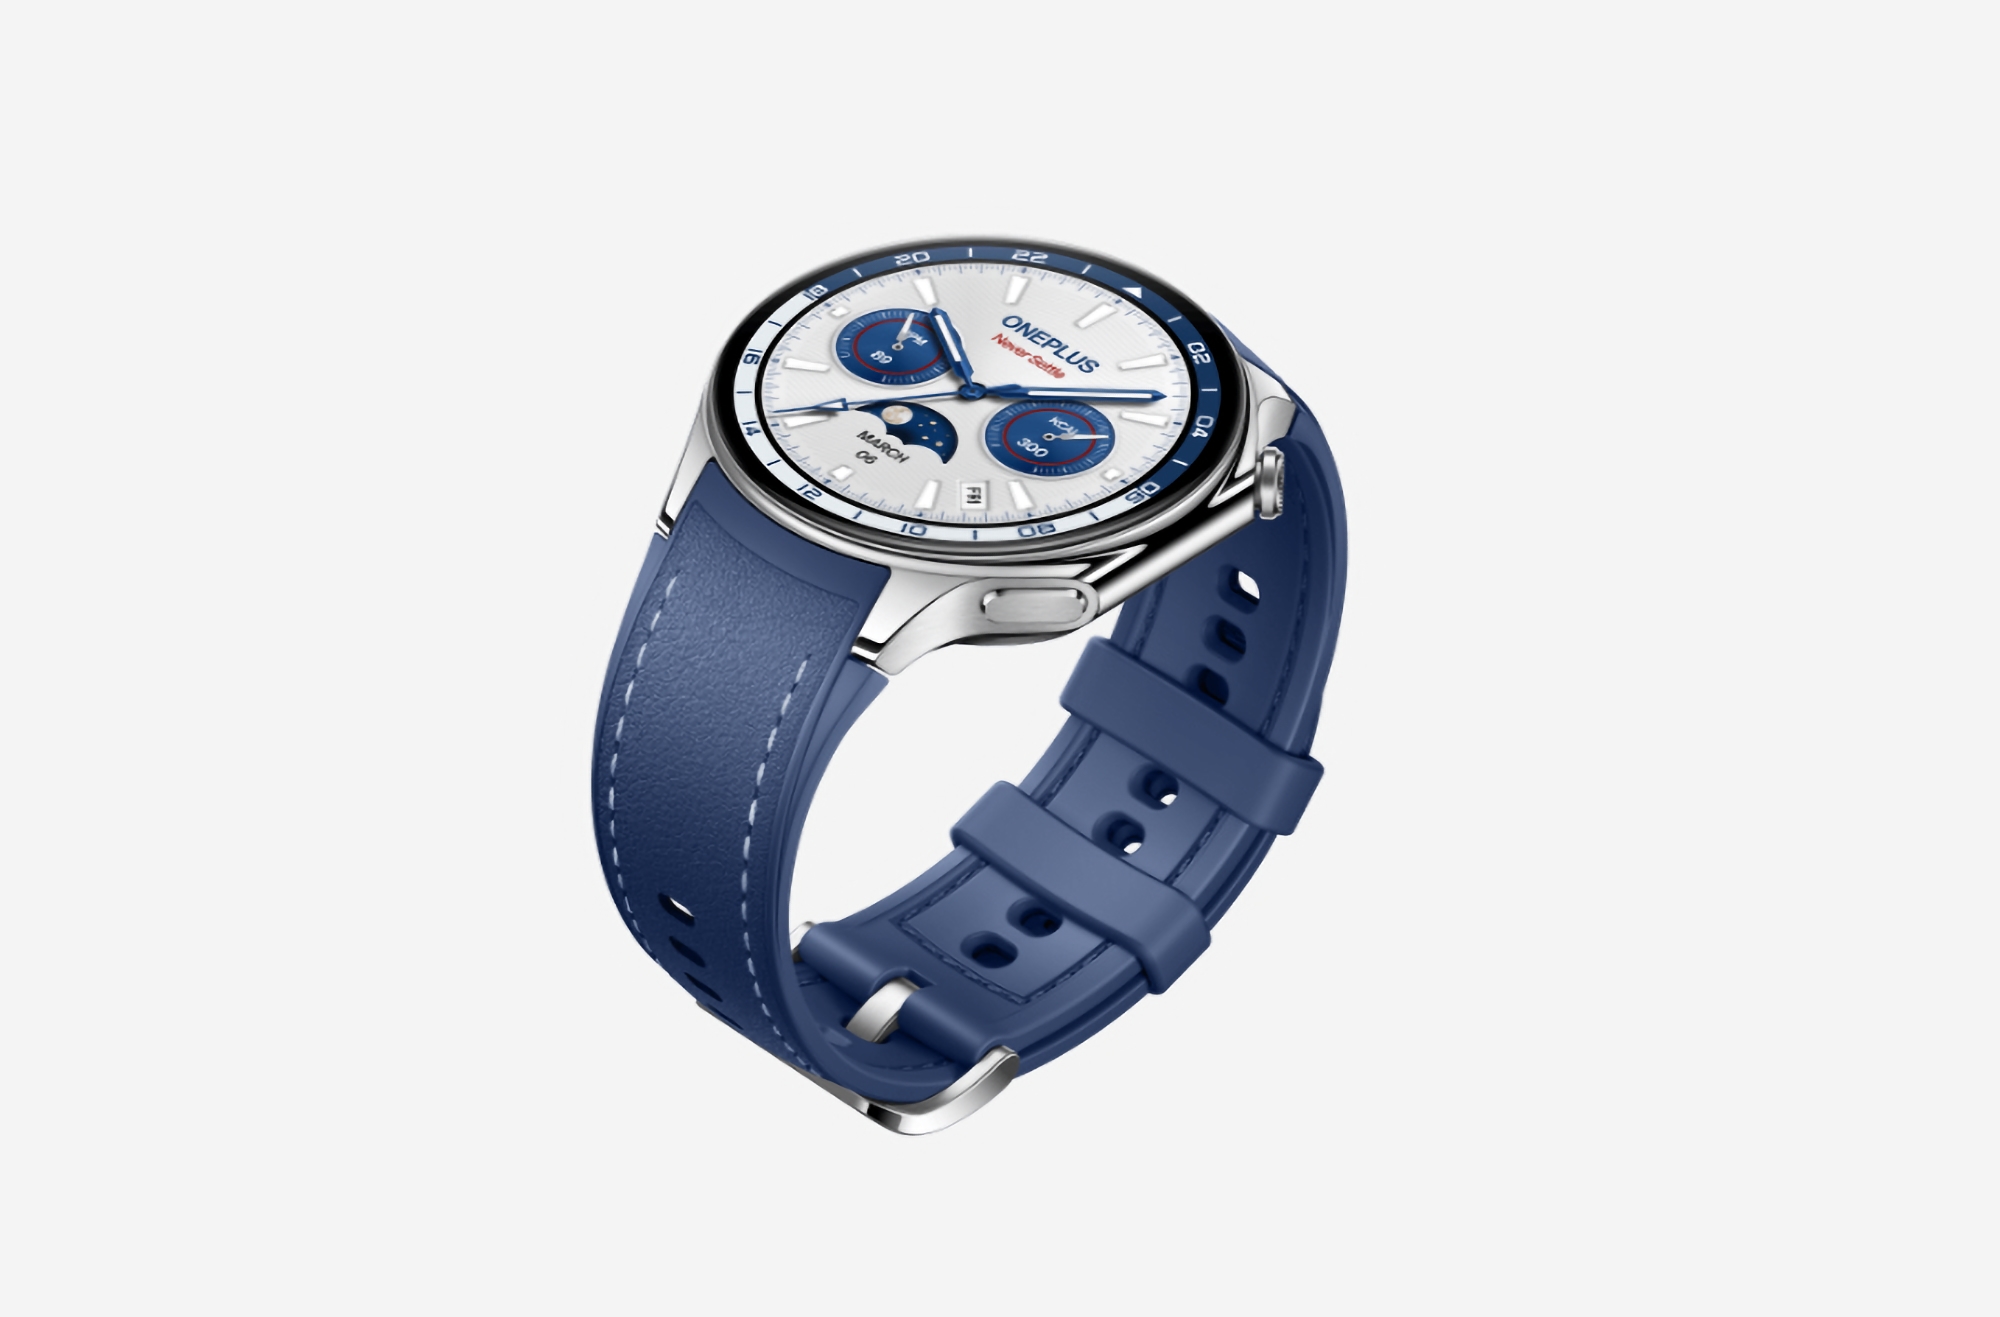 OnePlus Watch 2 Nordic Blue Edition har premiärvisats i Europa: en specialversion av OnePlus Watch 2 med skandinavisk design och ett pris på 349 euro